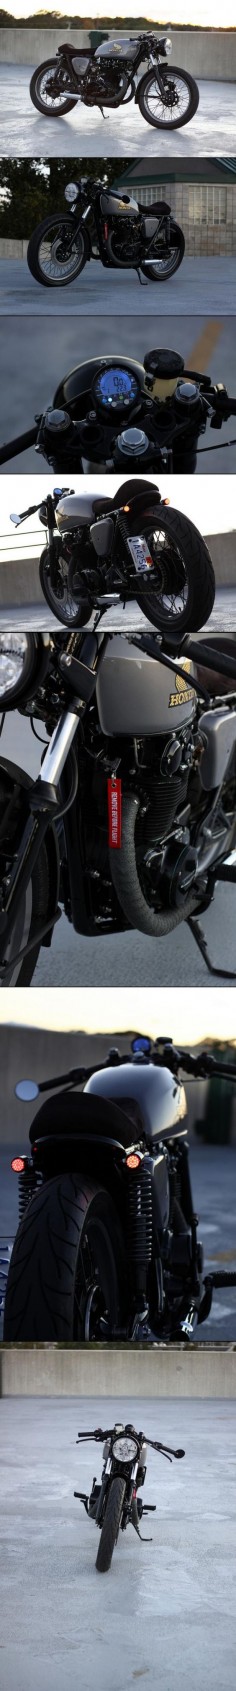 Honda CB 400 Cafe Racer #motorcycles #caferacer #motos |